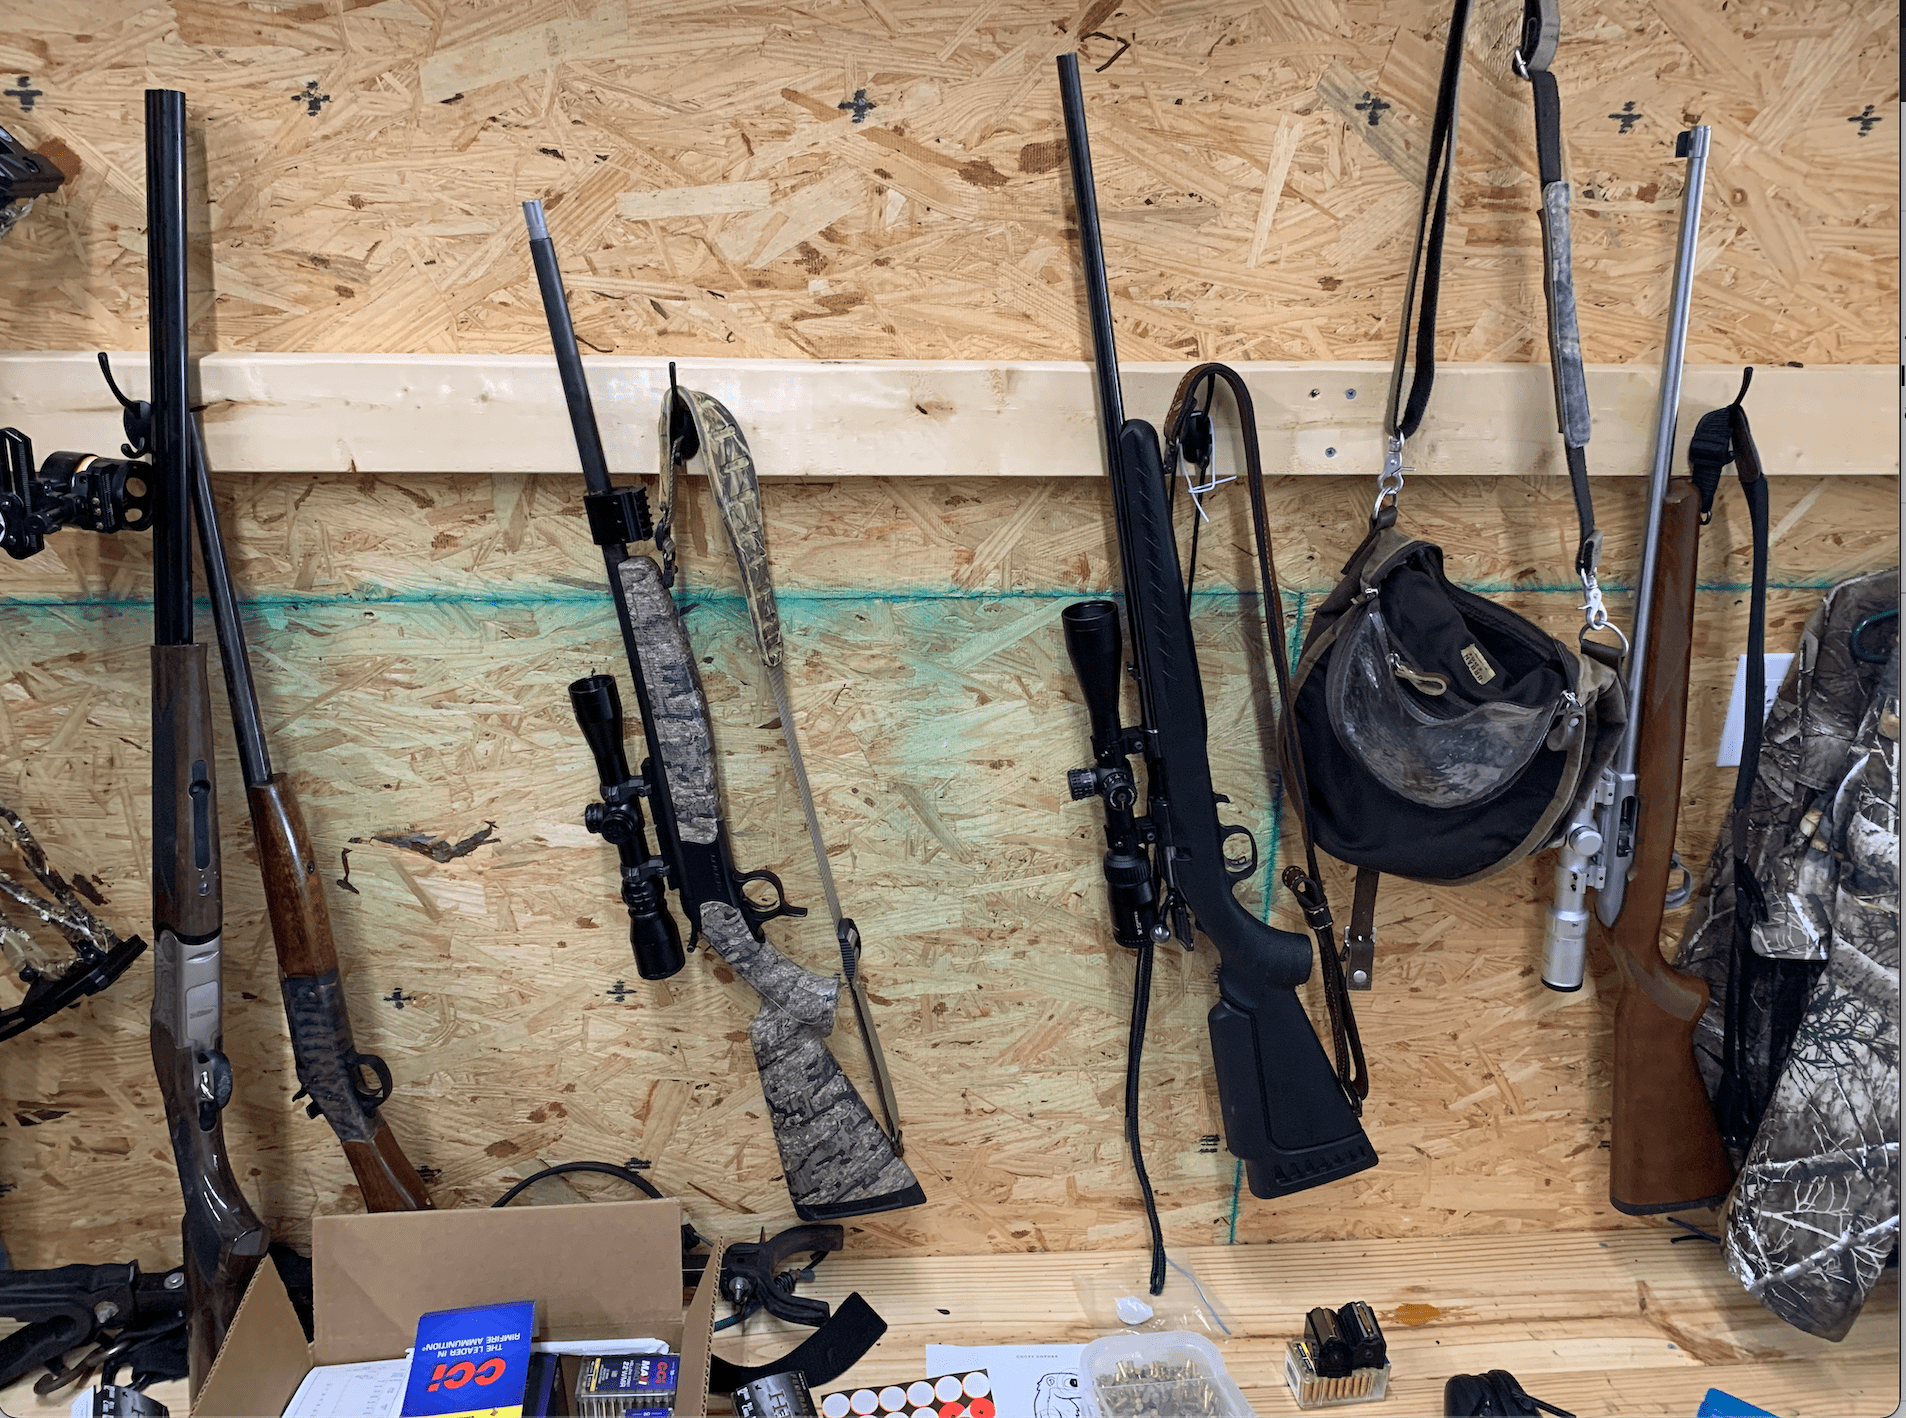 猎枪和步枪都是松鼠猎枪。